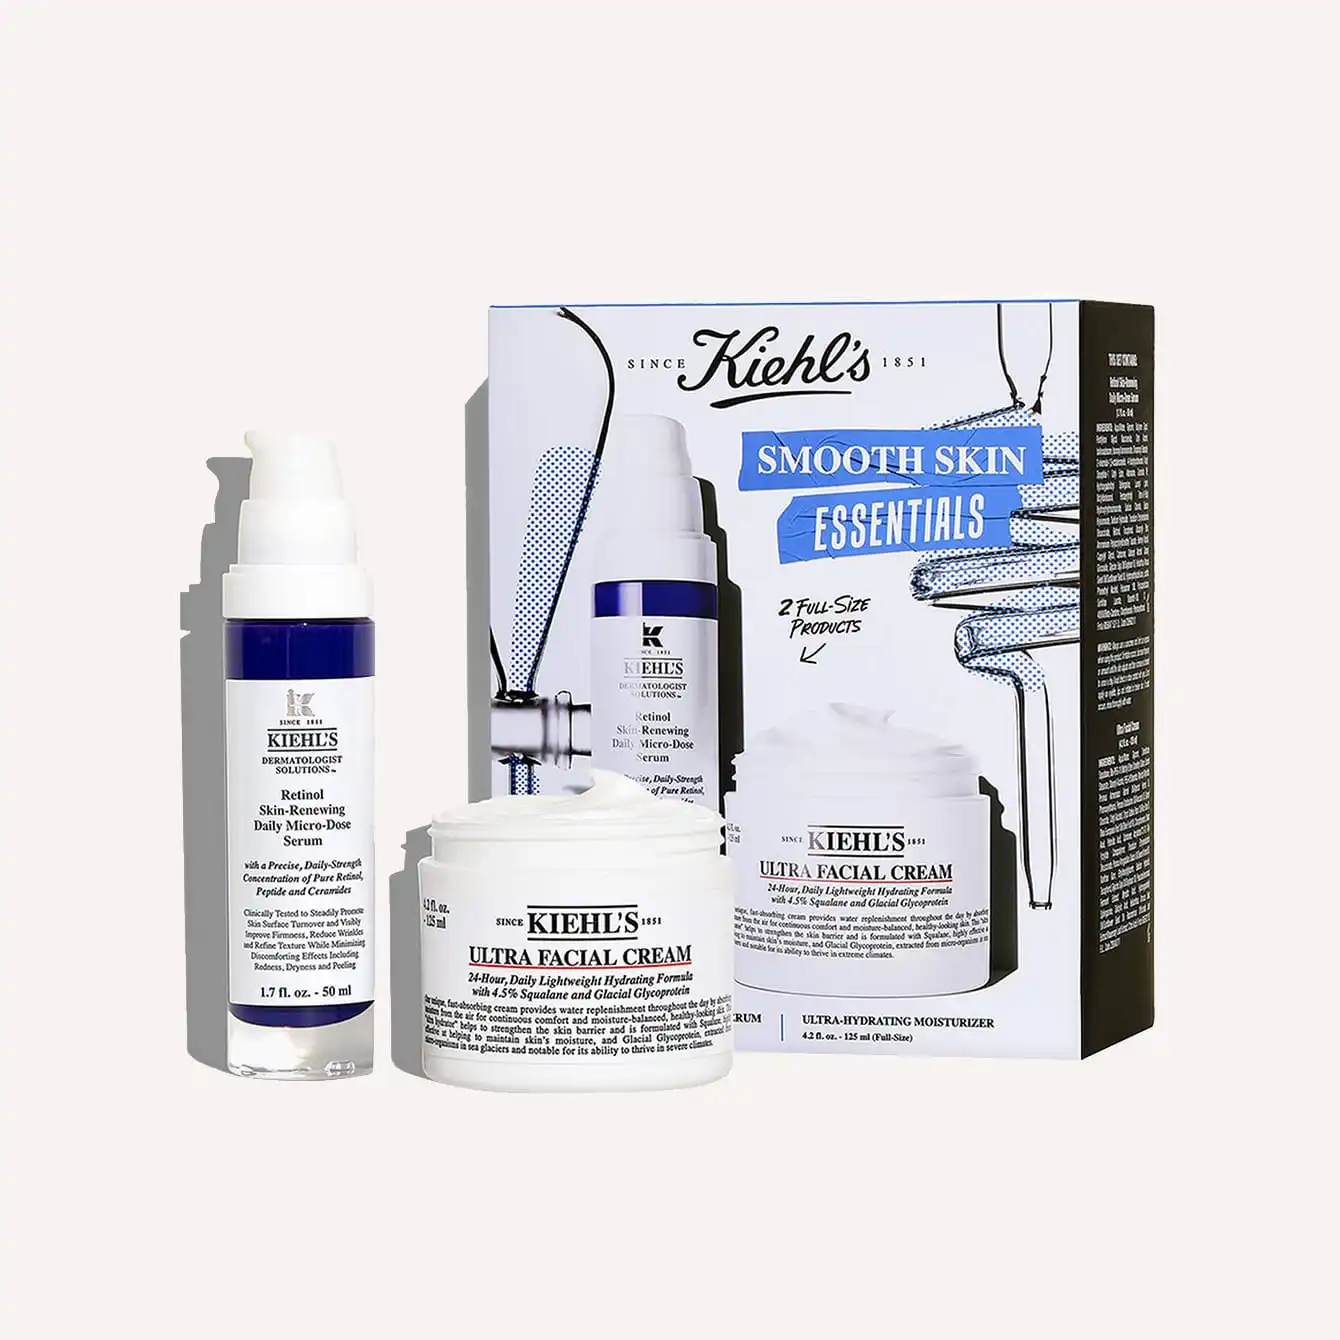 Kiehl's - Smooth Skin Essentials Gift Set